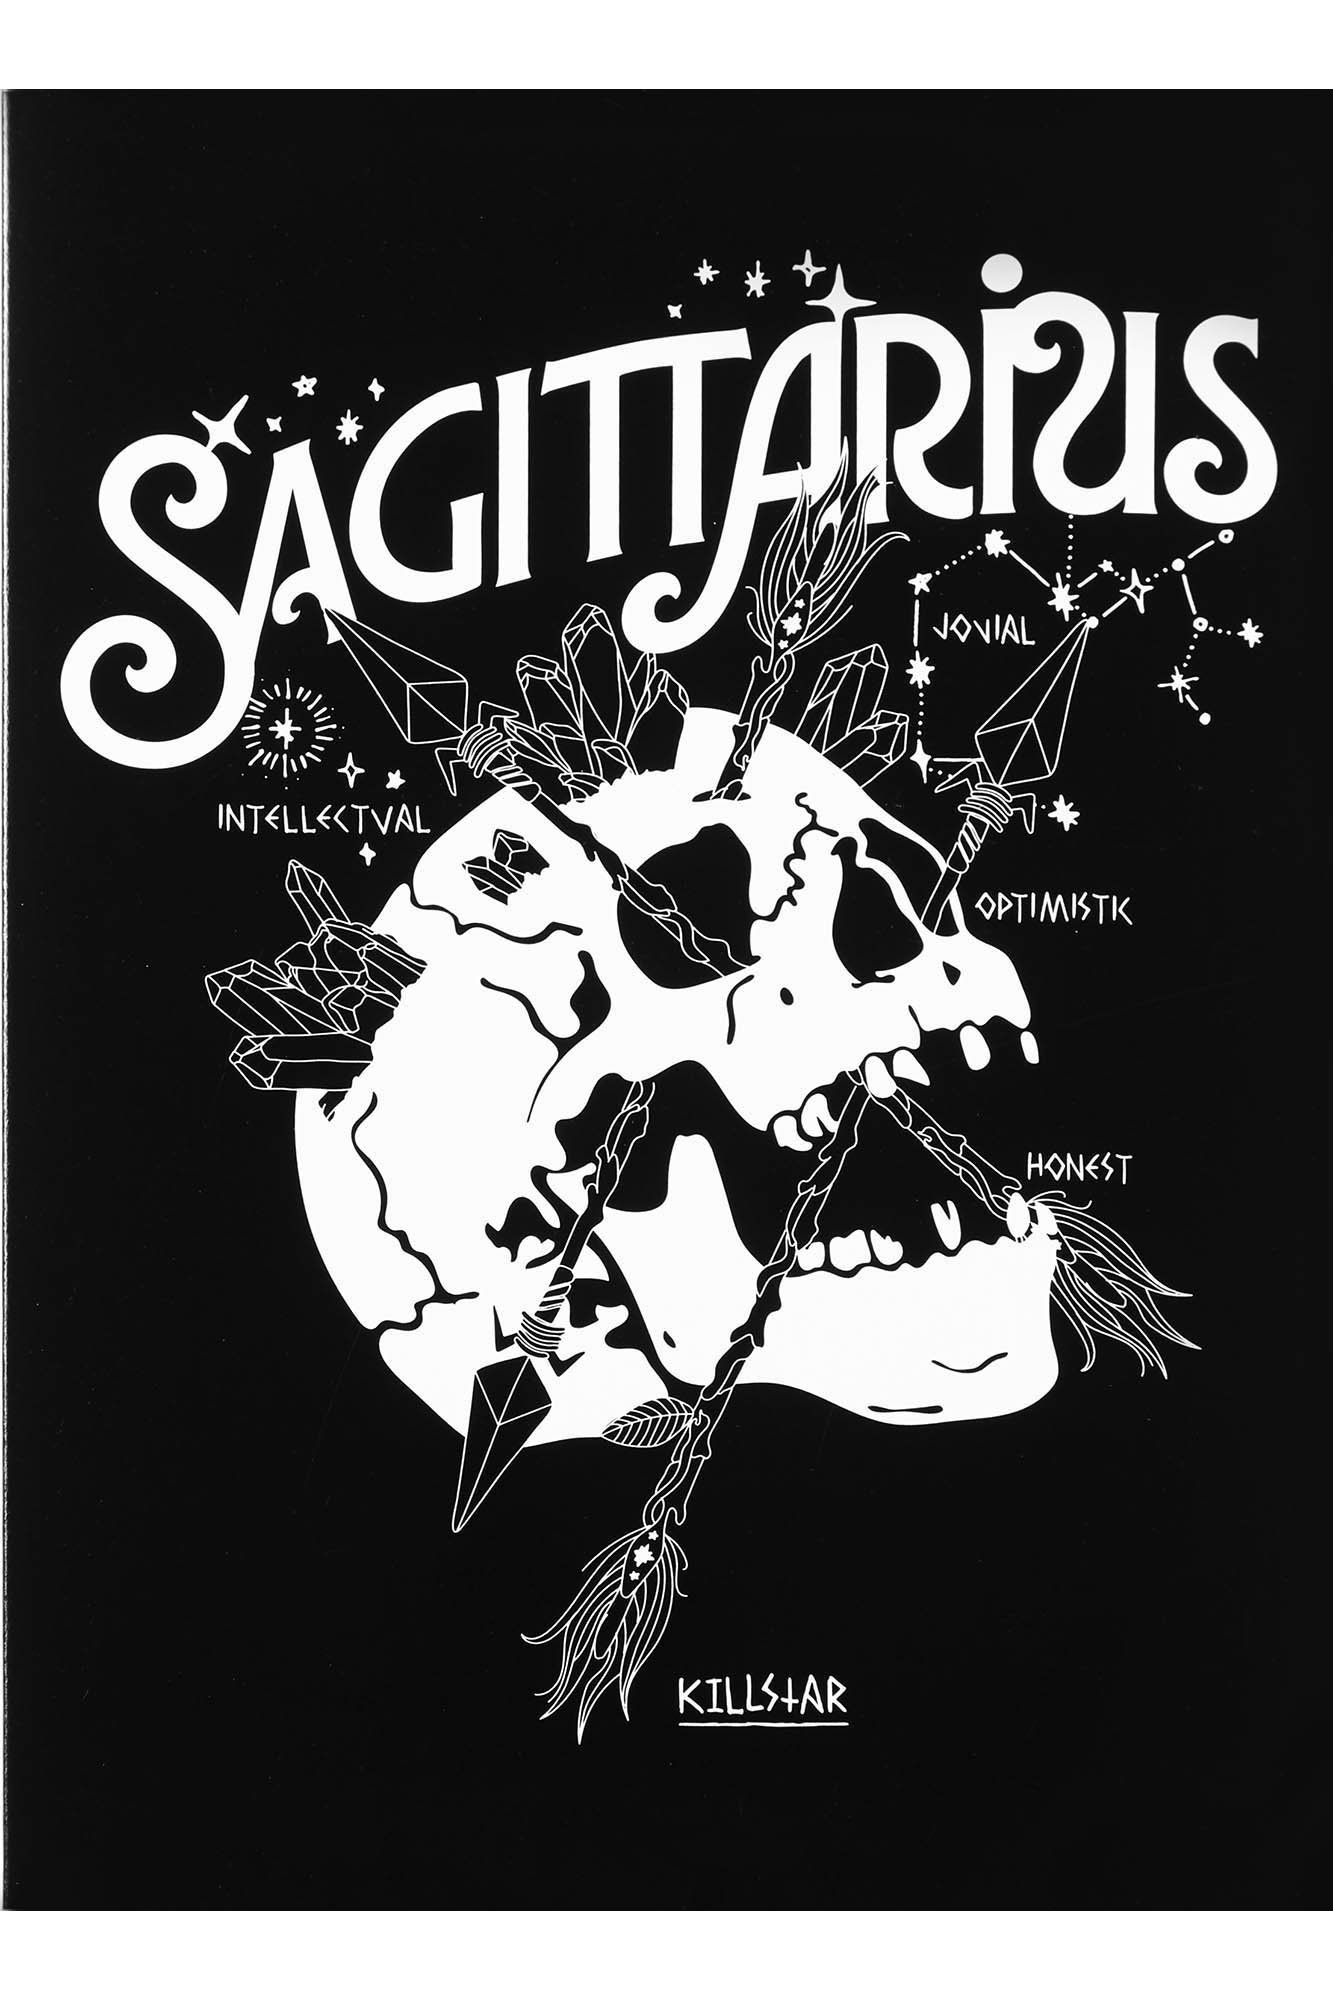 Sagittarius Wallpaper For Mobile posted .cutewallpaper.org